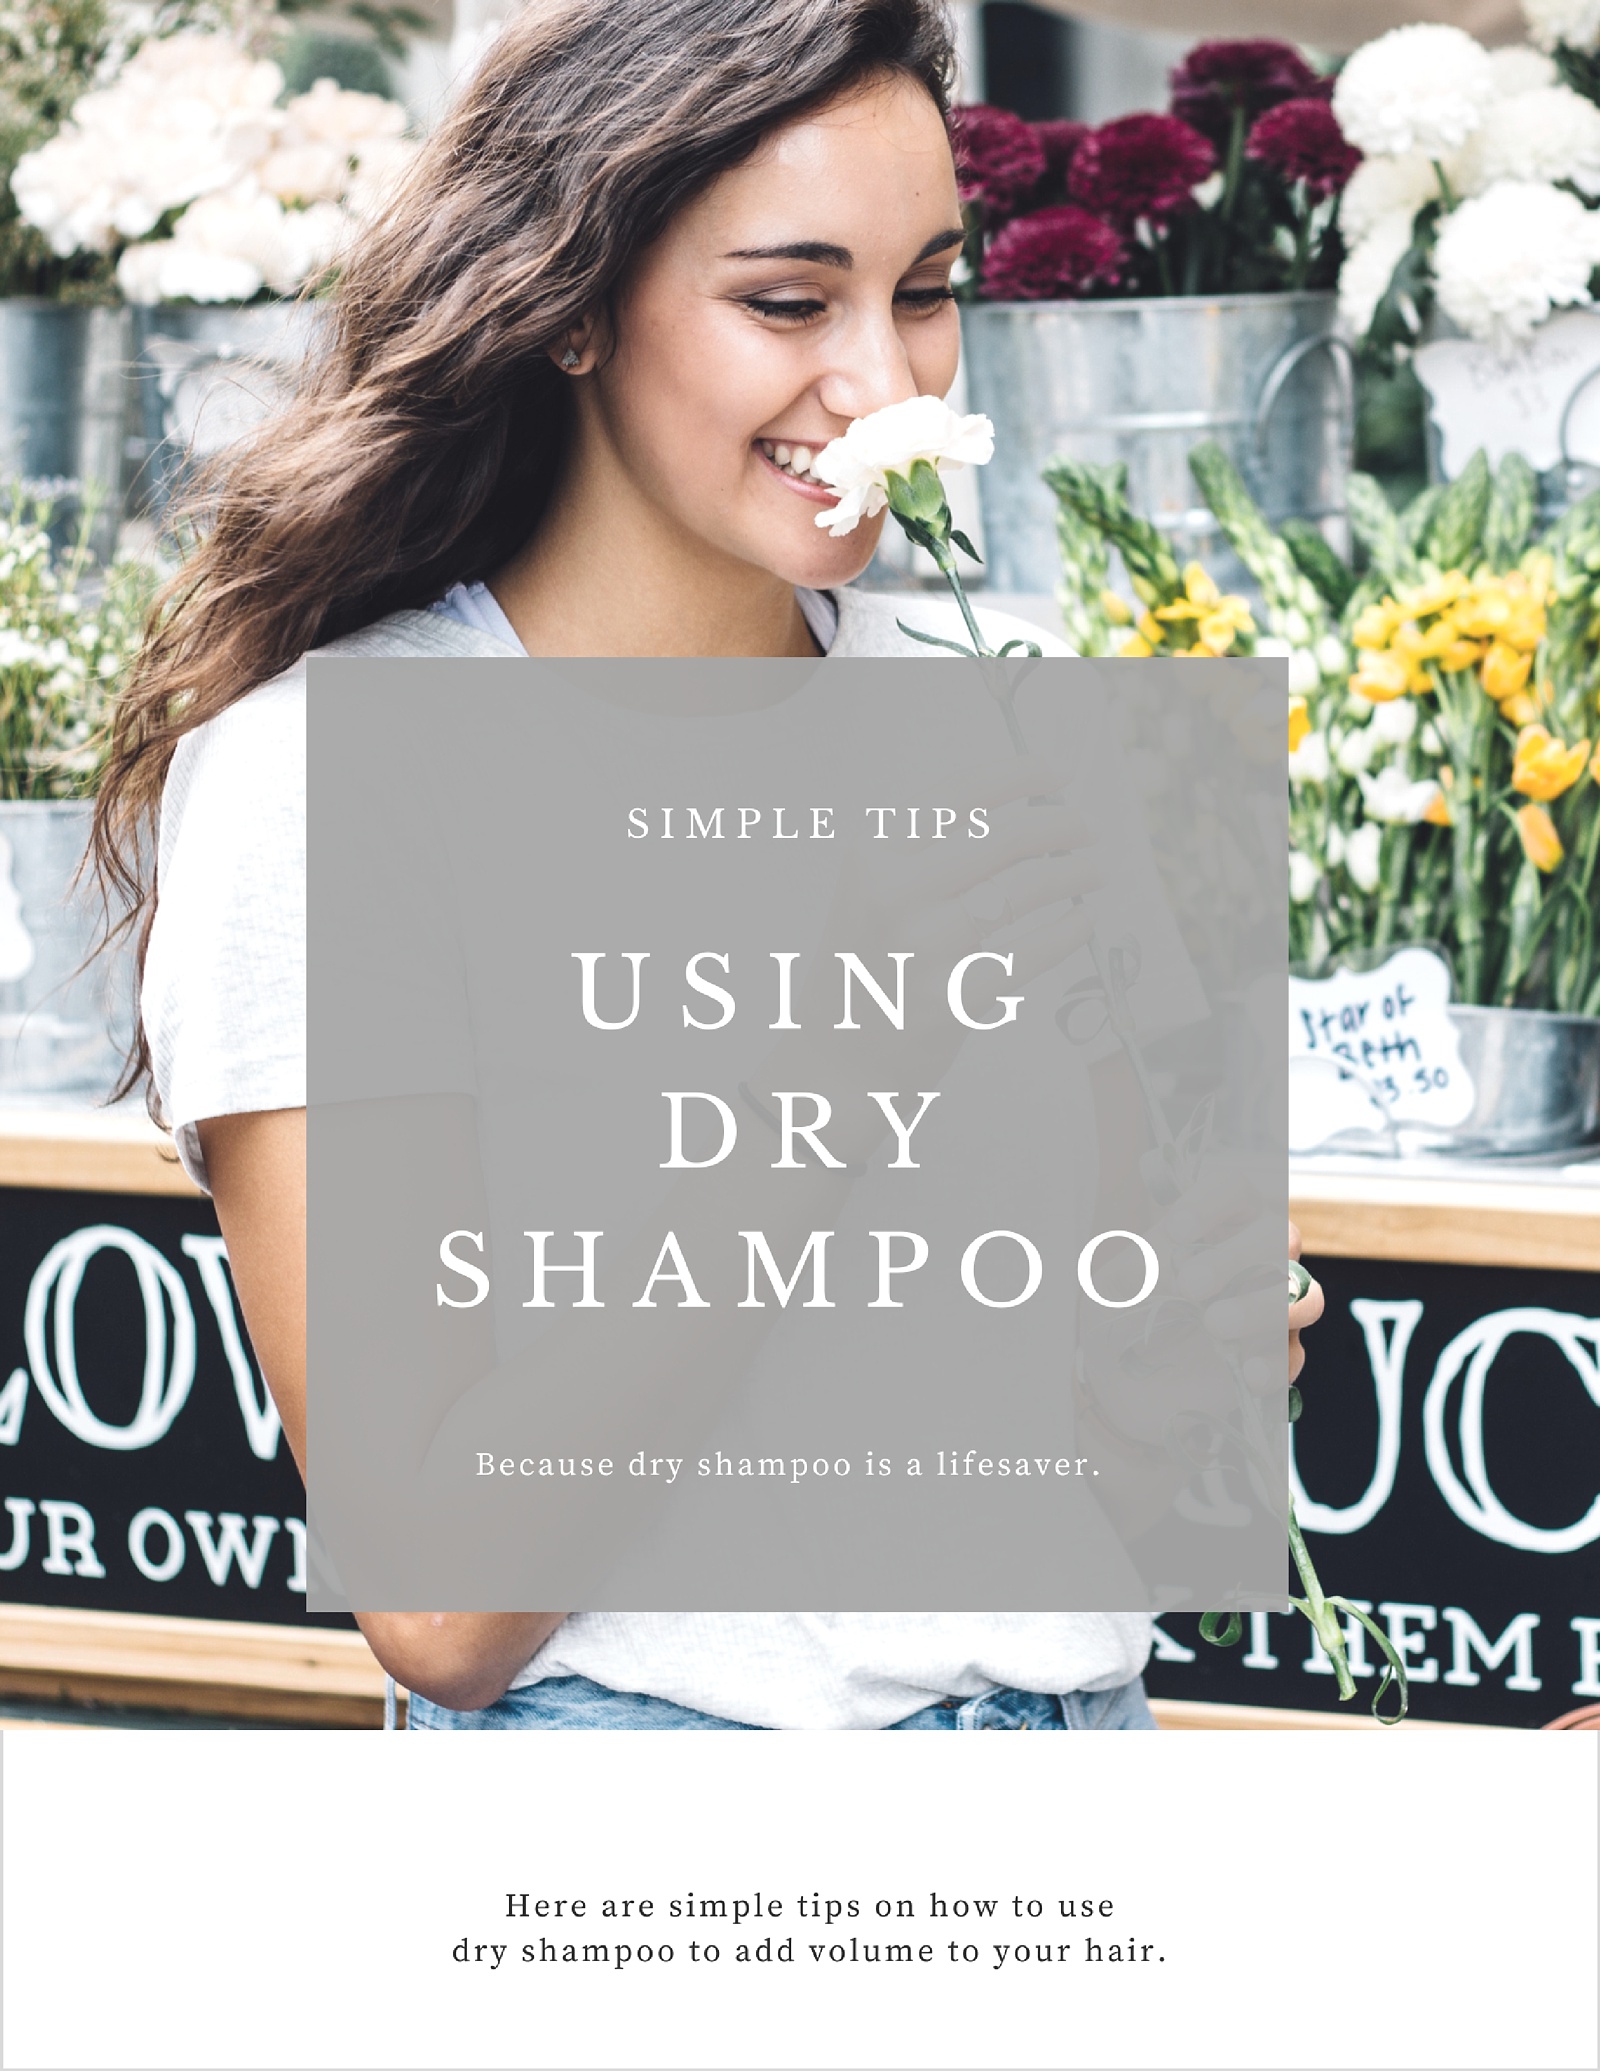 5 Způsoby použití suchého šamponu pro přidání objemu vlasů